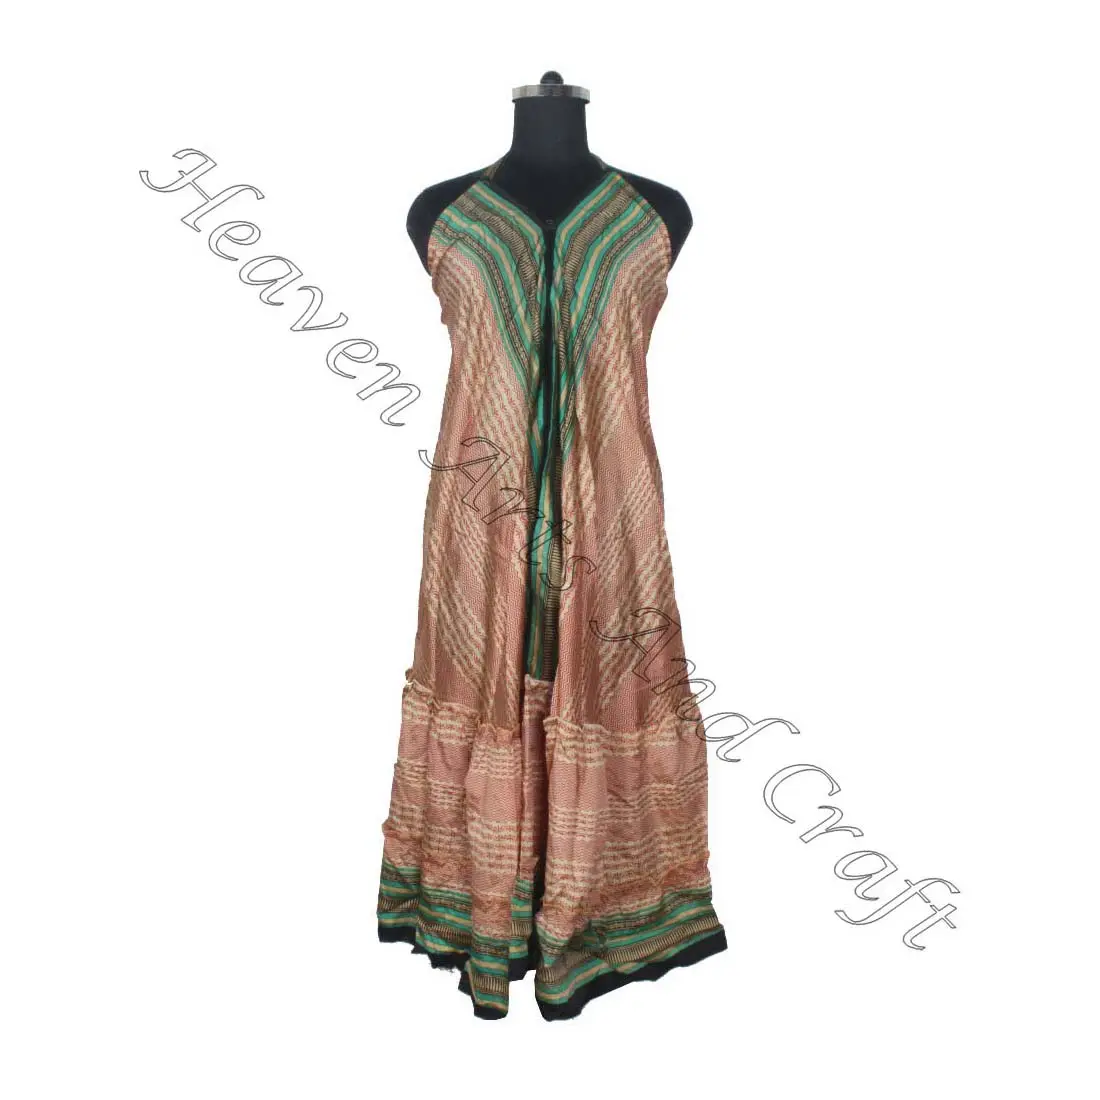 SD017 الساري / الساري / شري ملابس هندية وباكستانية من الهند هيبي بوهو مصنع وصانع ملابس النساء الساري الكلاسيكي